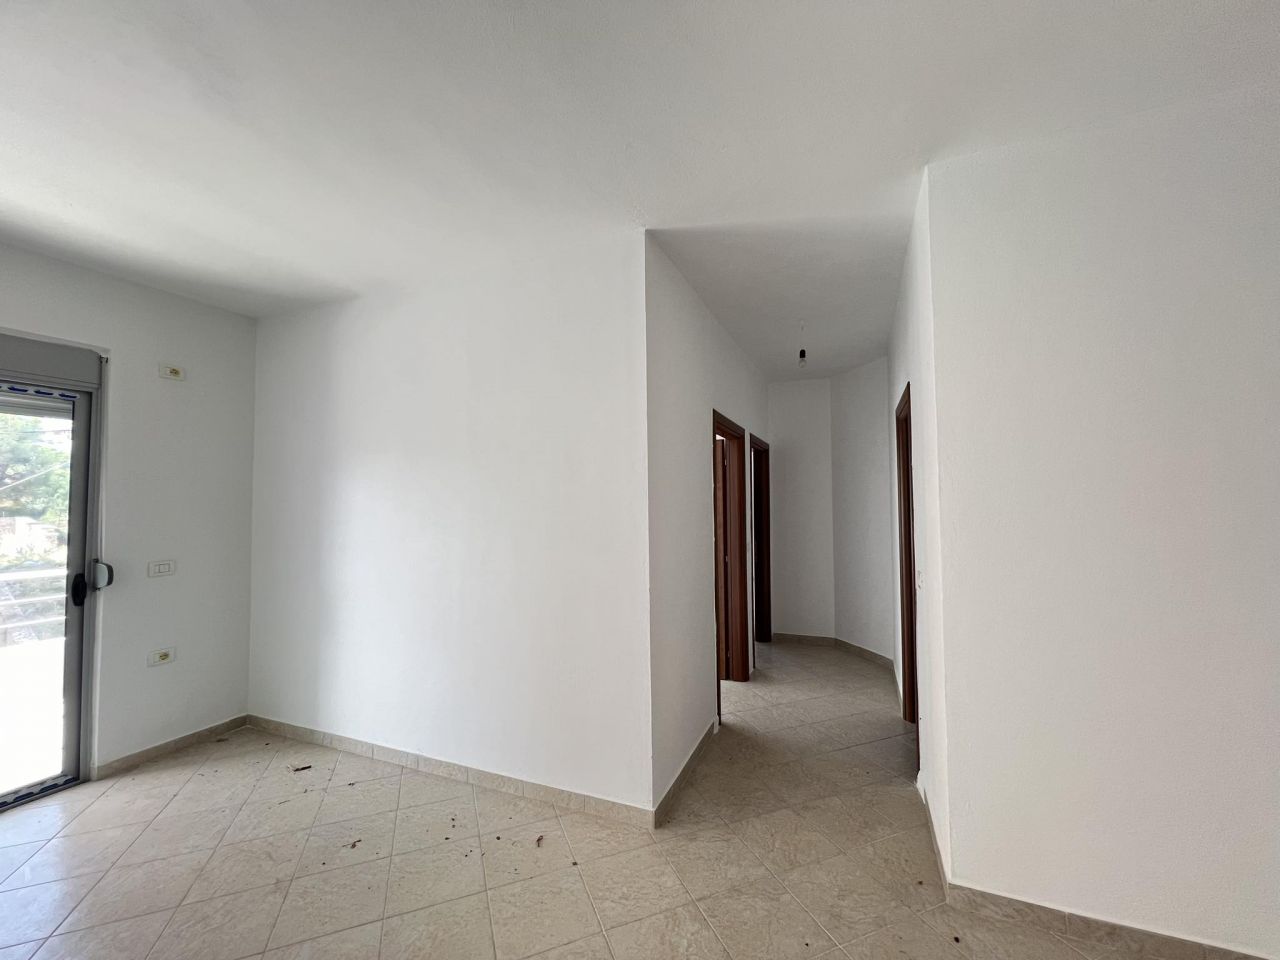 Apartment mit zwei Schlafzimmern und zwei Bädern zum Verkauf in Saranda, Albanien, nicht weit vom Meer entfernt, in guter Qualität gebaut